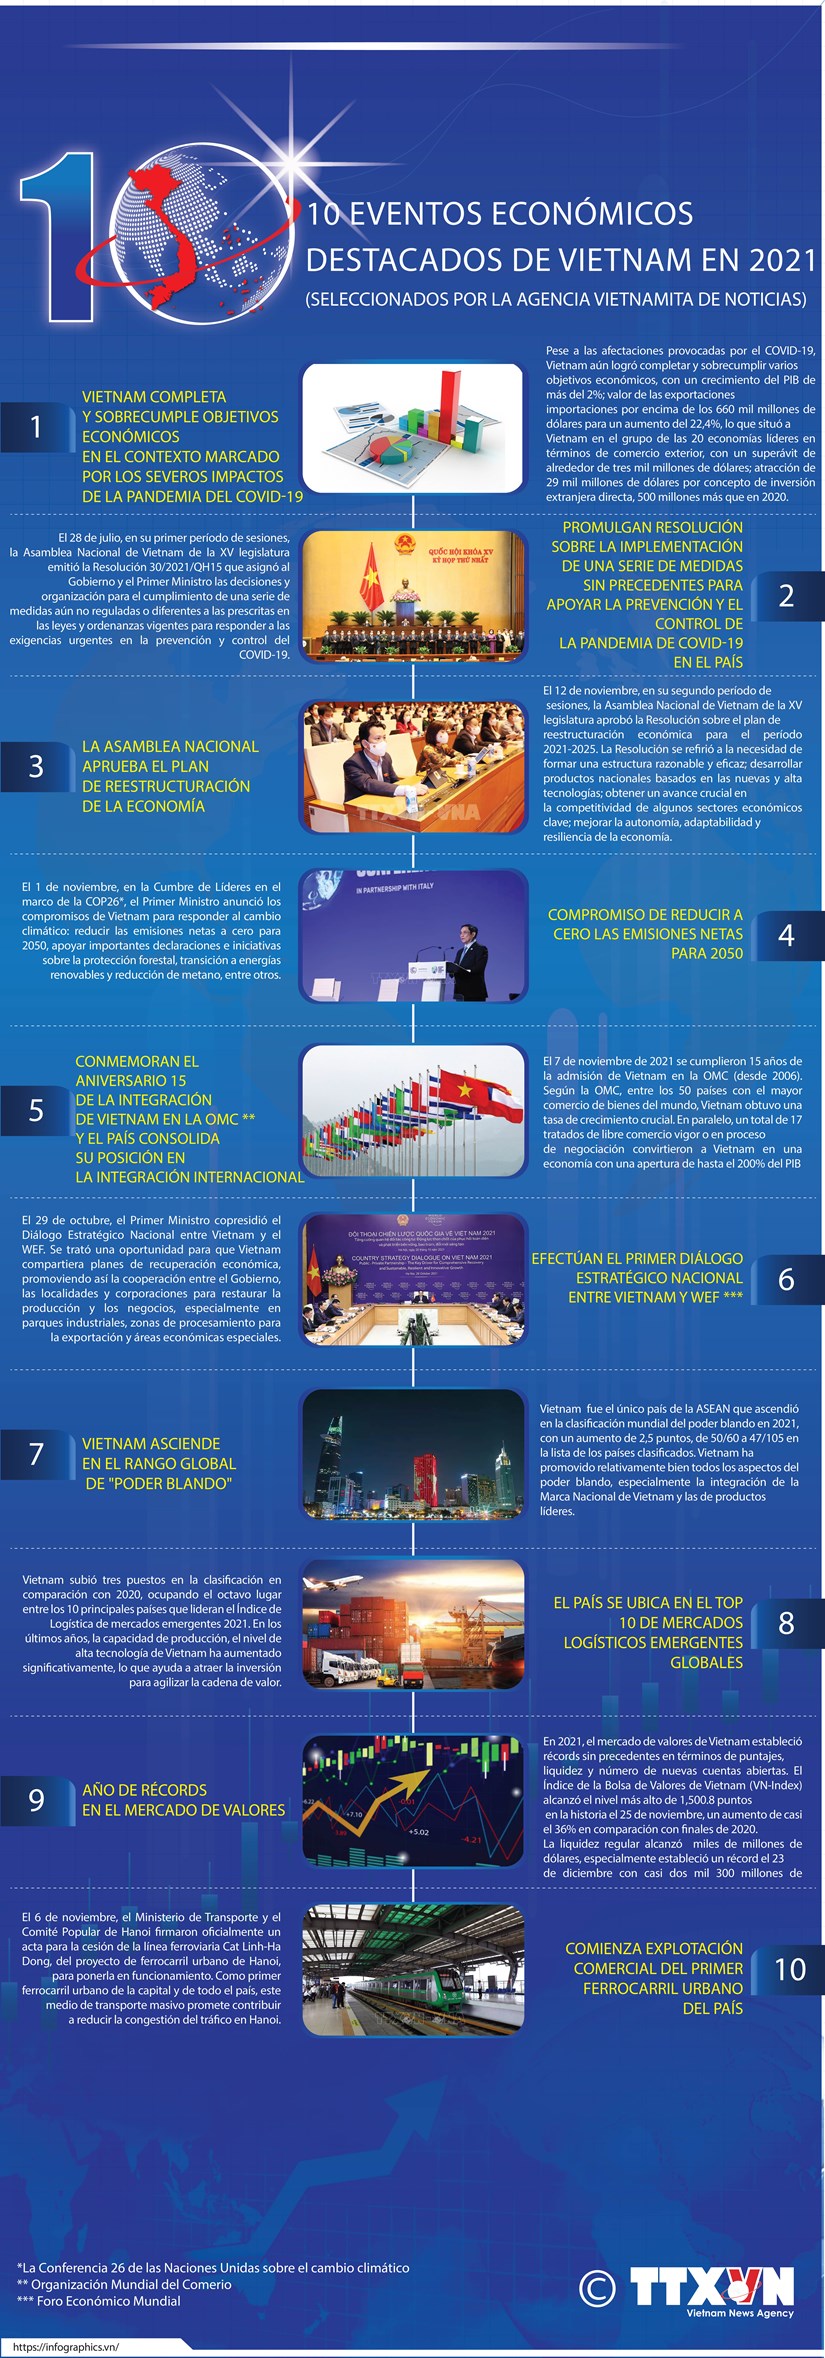 Los 10 eventos economicos destacados de Vietnam en 2021 seleccionados por la VNA hinh anh 1